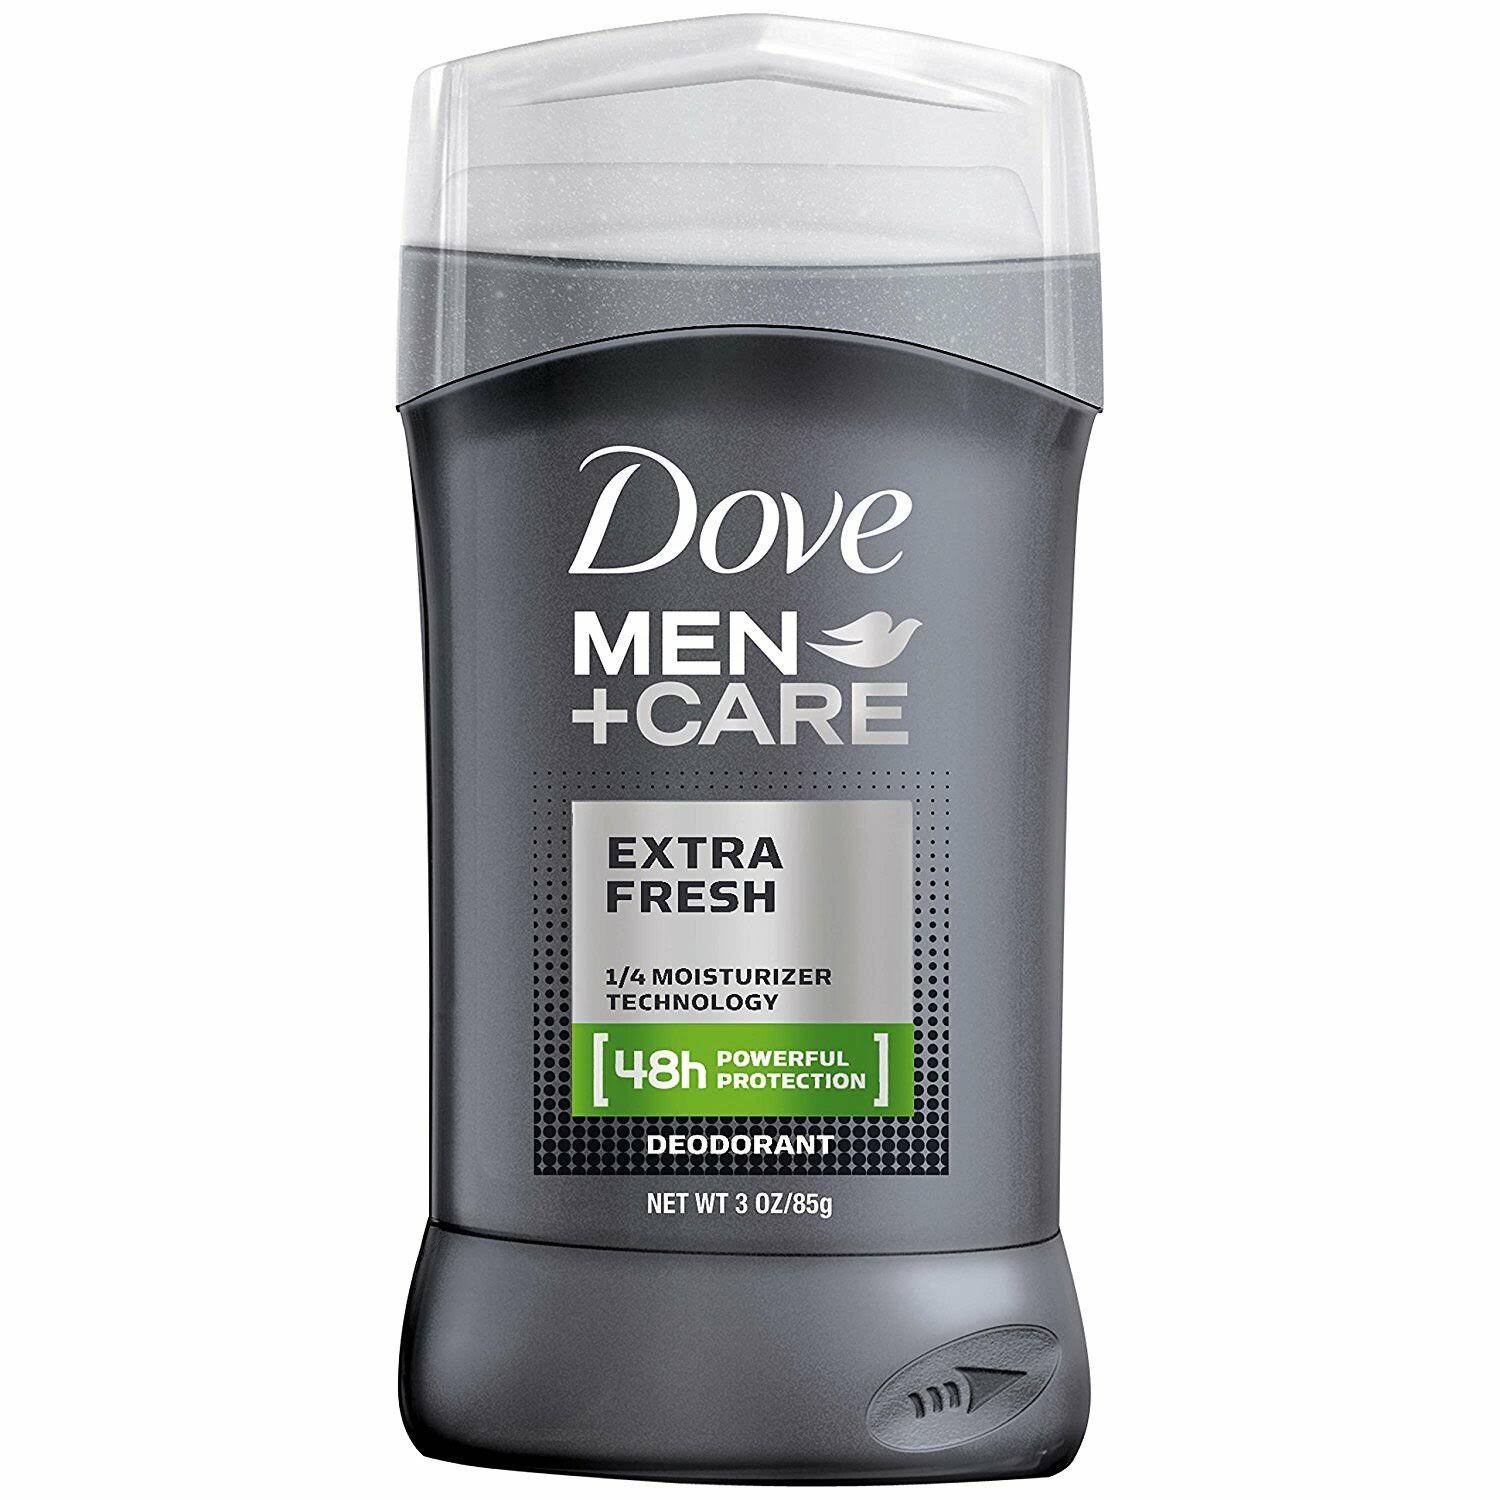 Dove Deoderant Men Plus Care Deodorant - Extra Fresh, 3oz